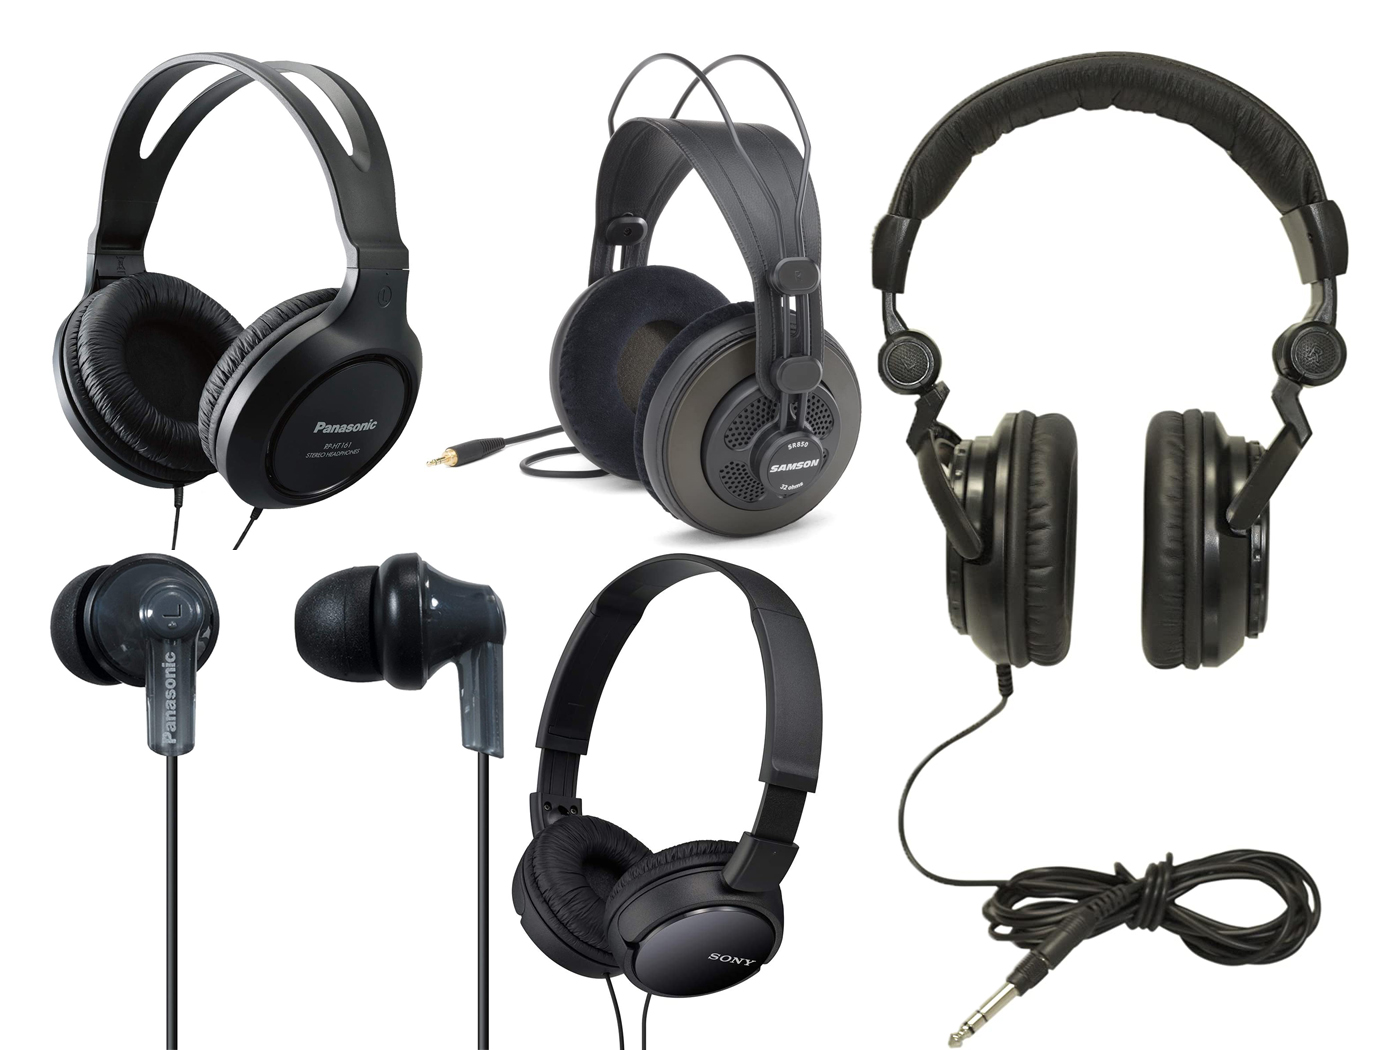 Best 5 headphones under $50